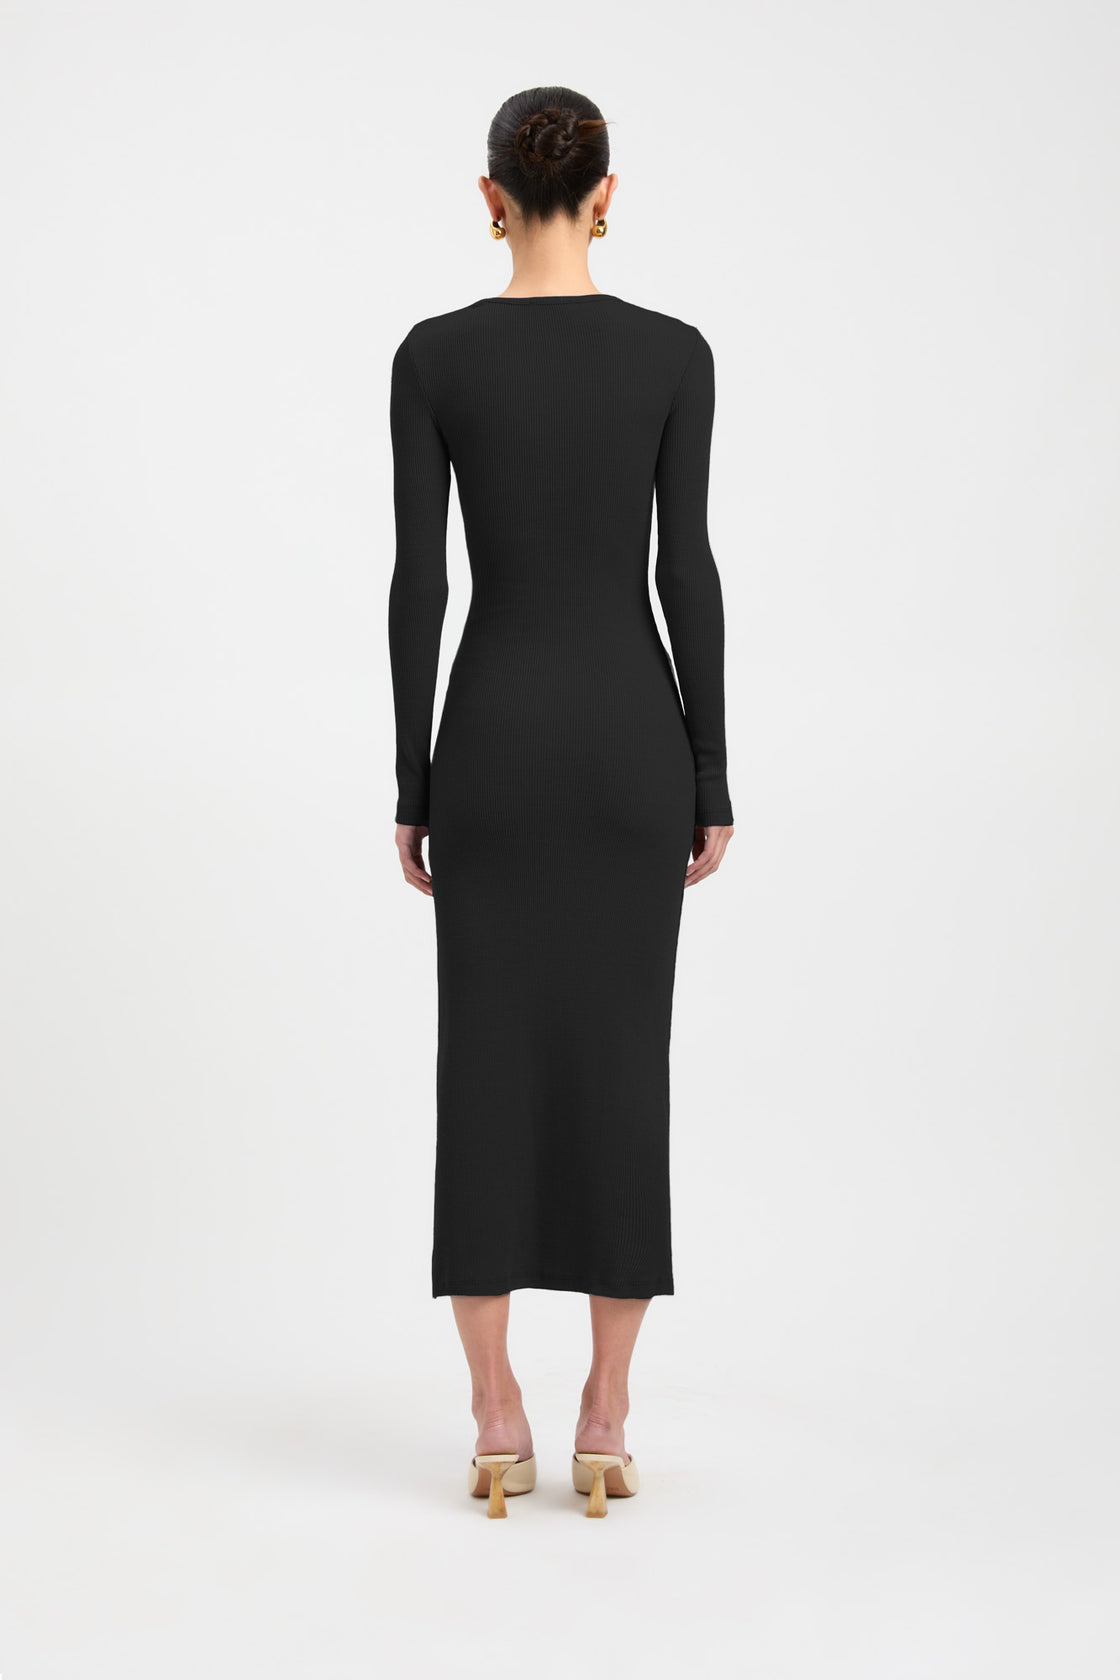 Buy Emmett Merino Wool Dress Black Online | Australia